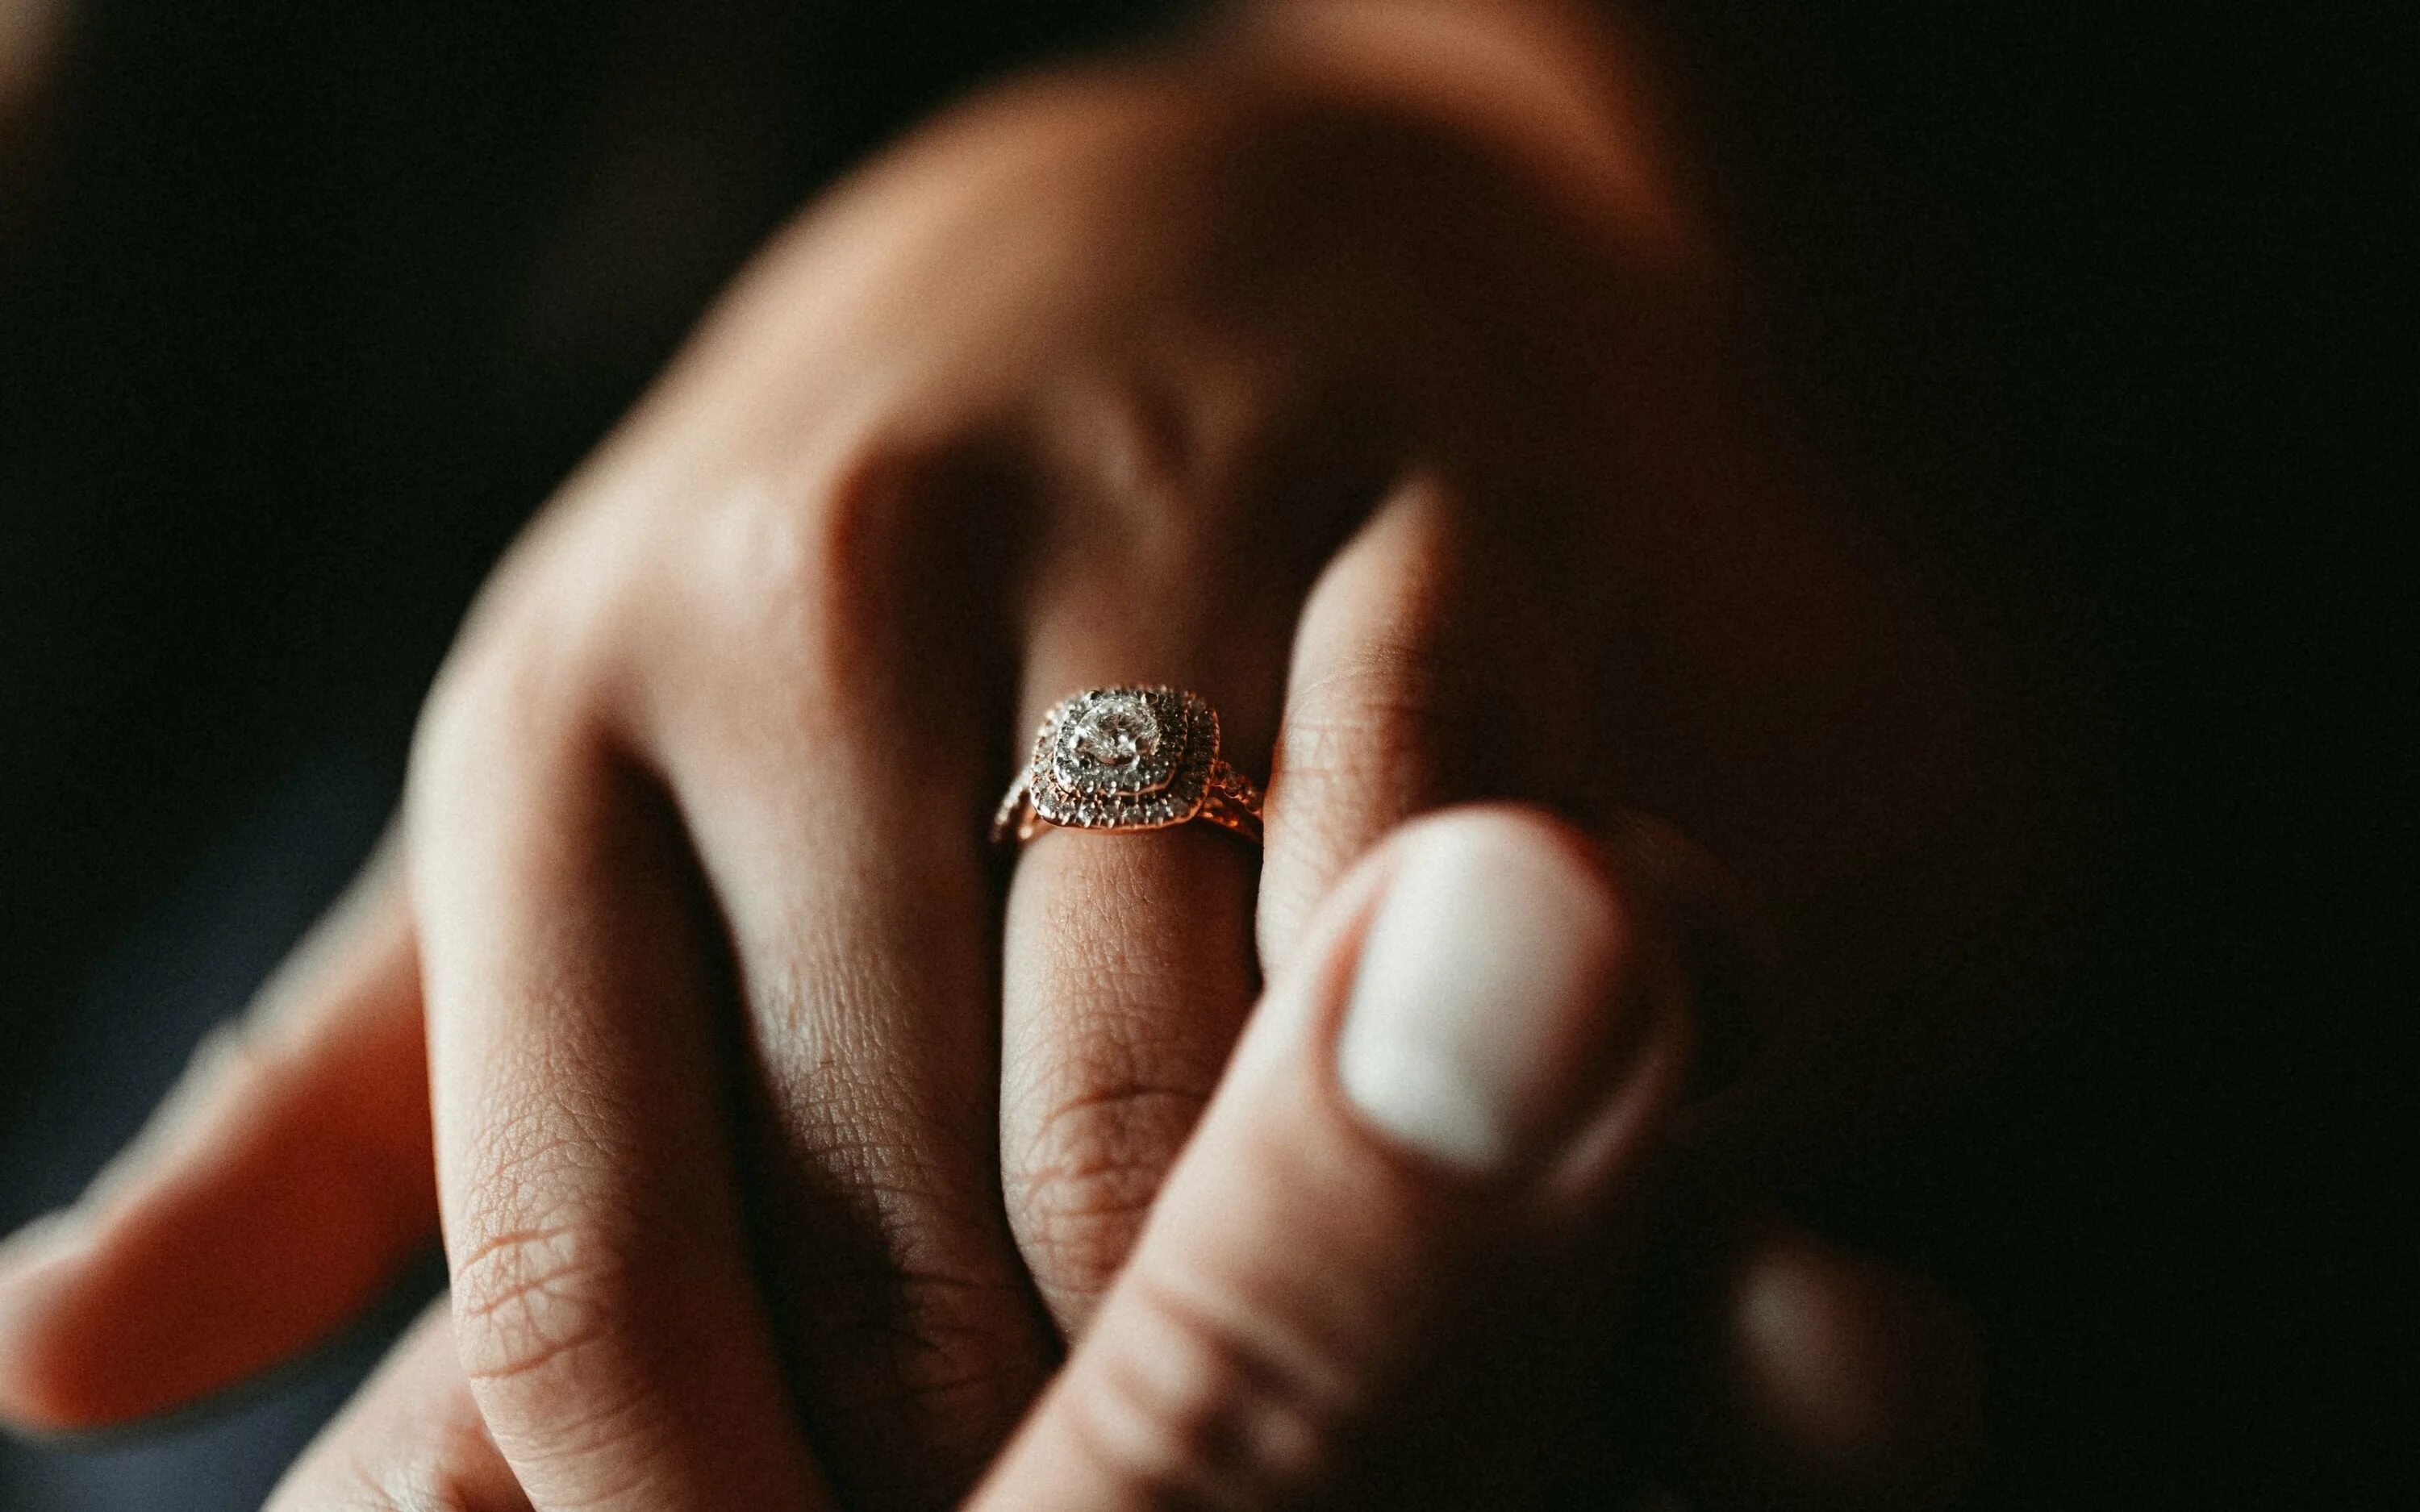 Кольцо на руке. Обручальные кольца на руках. Перстень на руке. Обручальное кольцо на пальце.